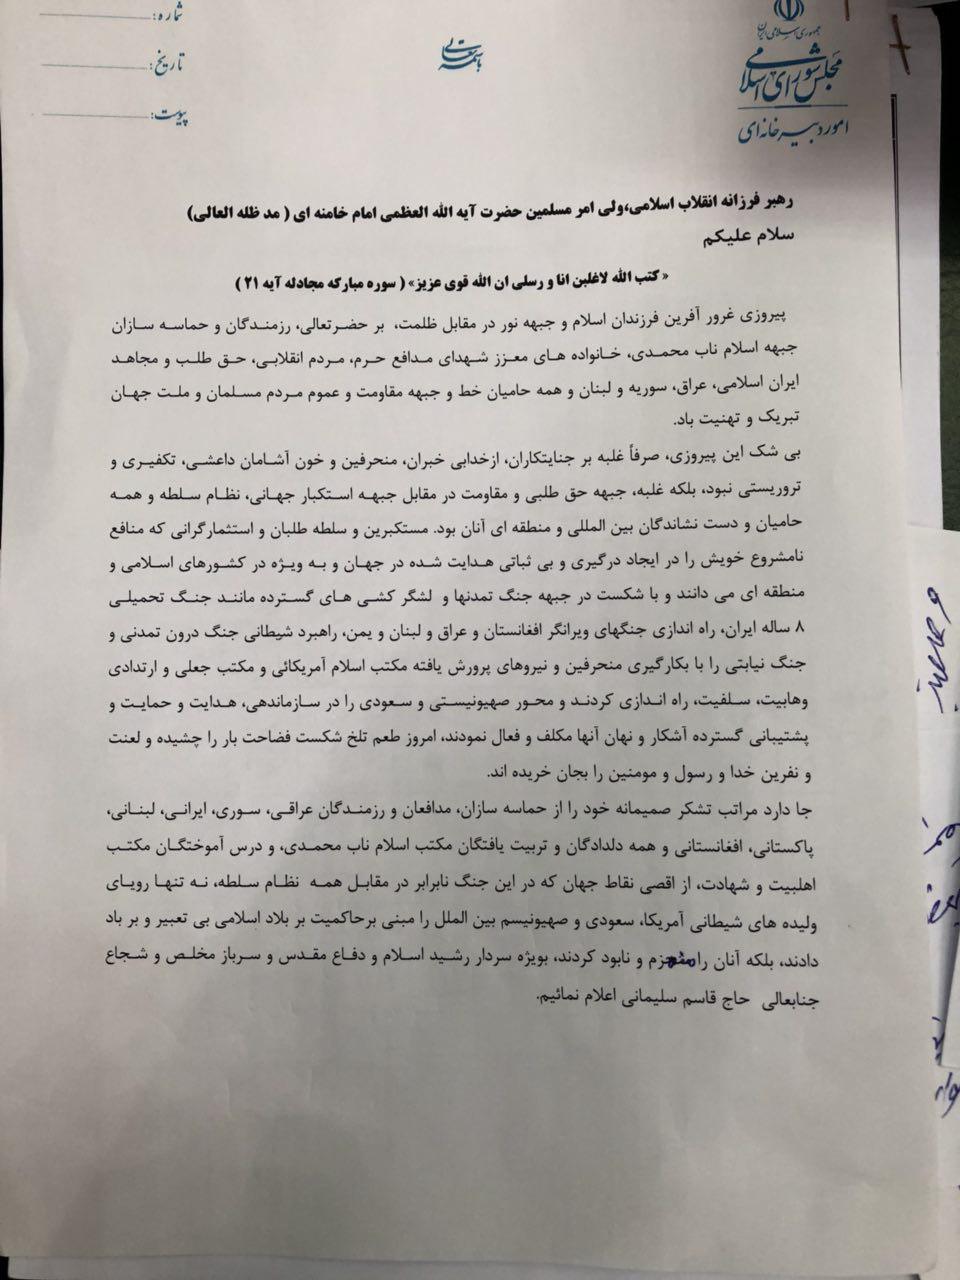 تصویر نامه نمایندگان به رهبری در تقدیر از سردار سلیمانی